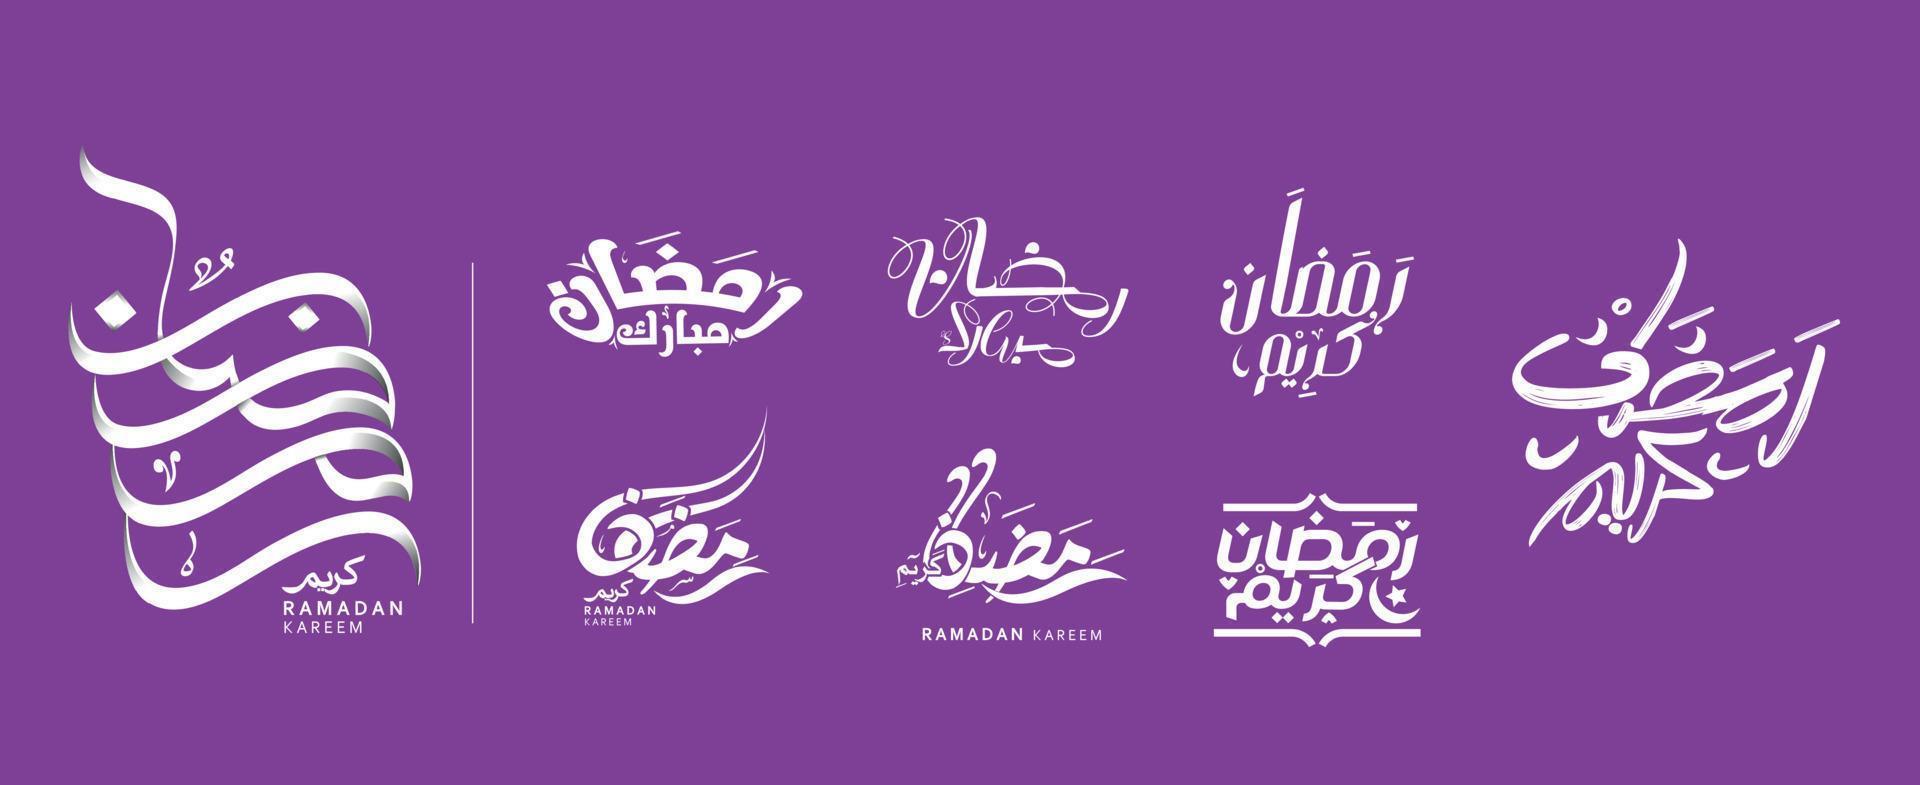 Arabisch Typografie mit grüßen Ramadan karem, Ramadan Mubarak vektor